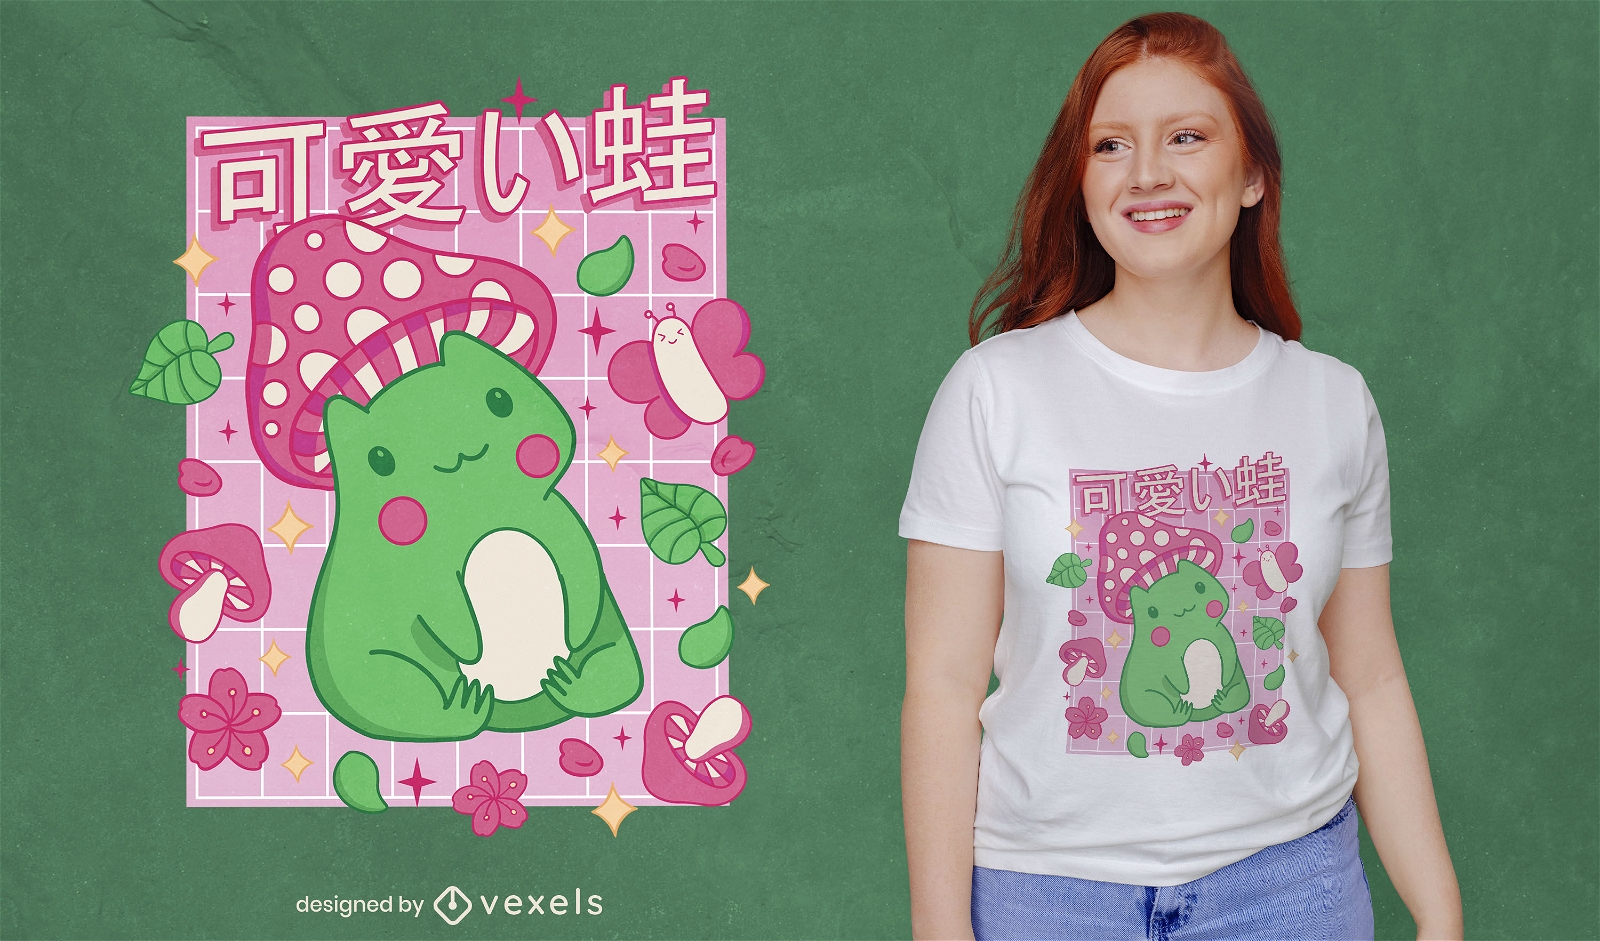 Cute frog and butterflies t-shirt design